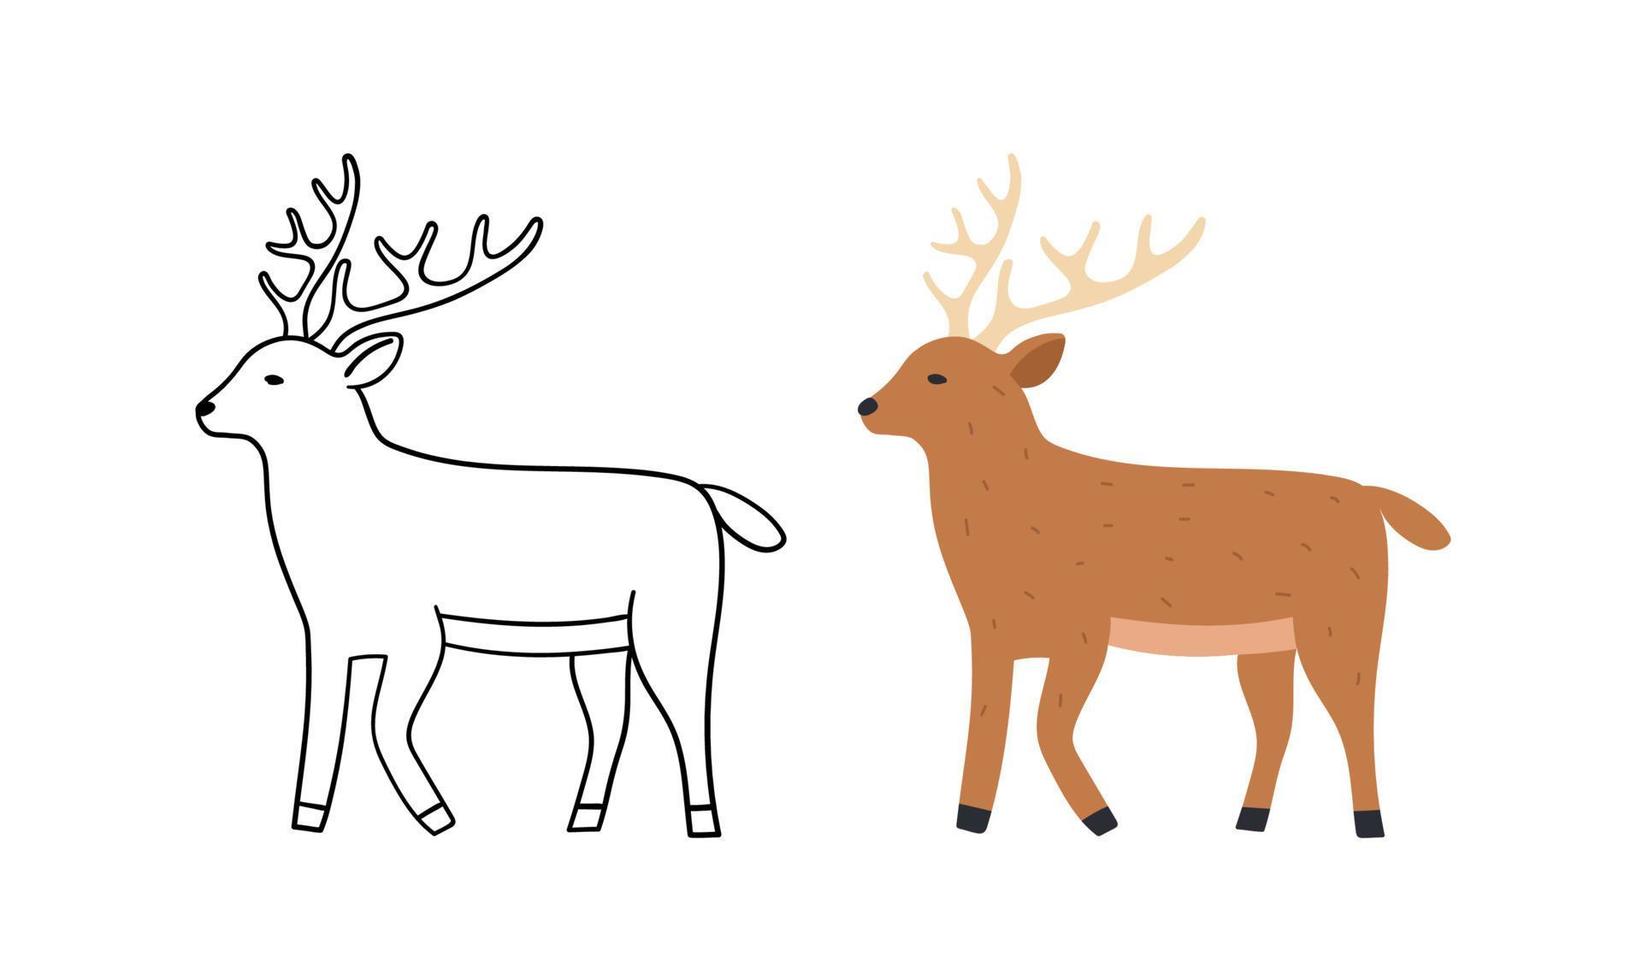 lindo ciervo dibujado a mano. Ilustración de vector salvaje animal. versión de contorno y color.